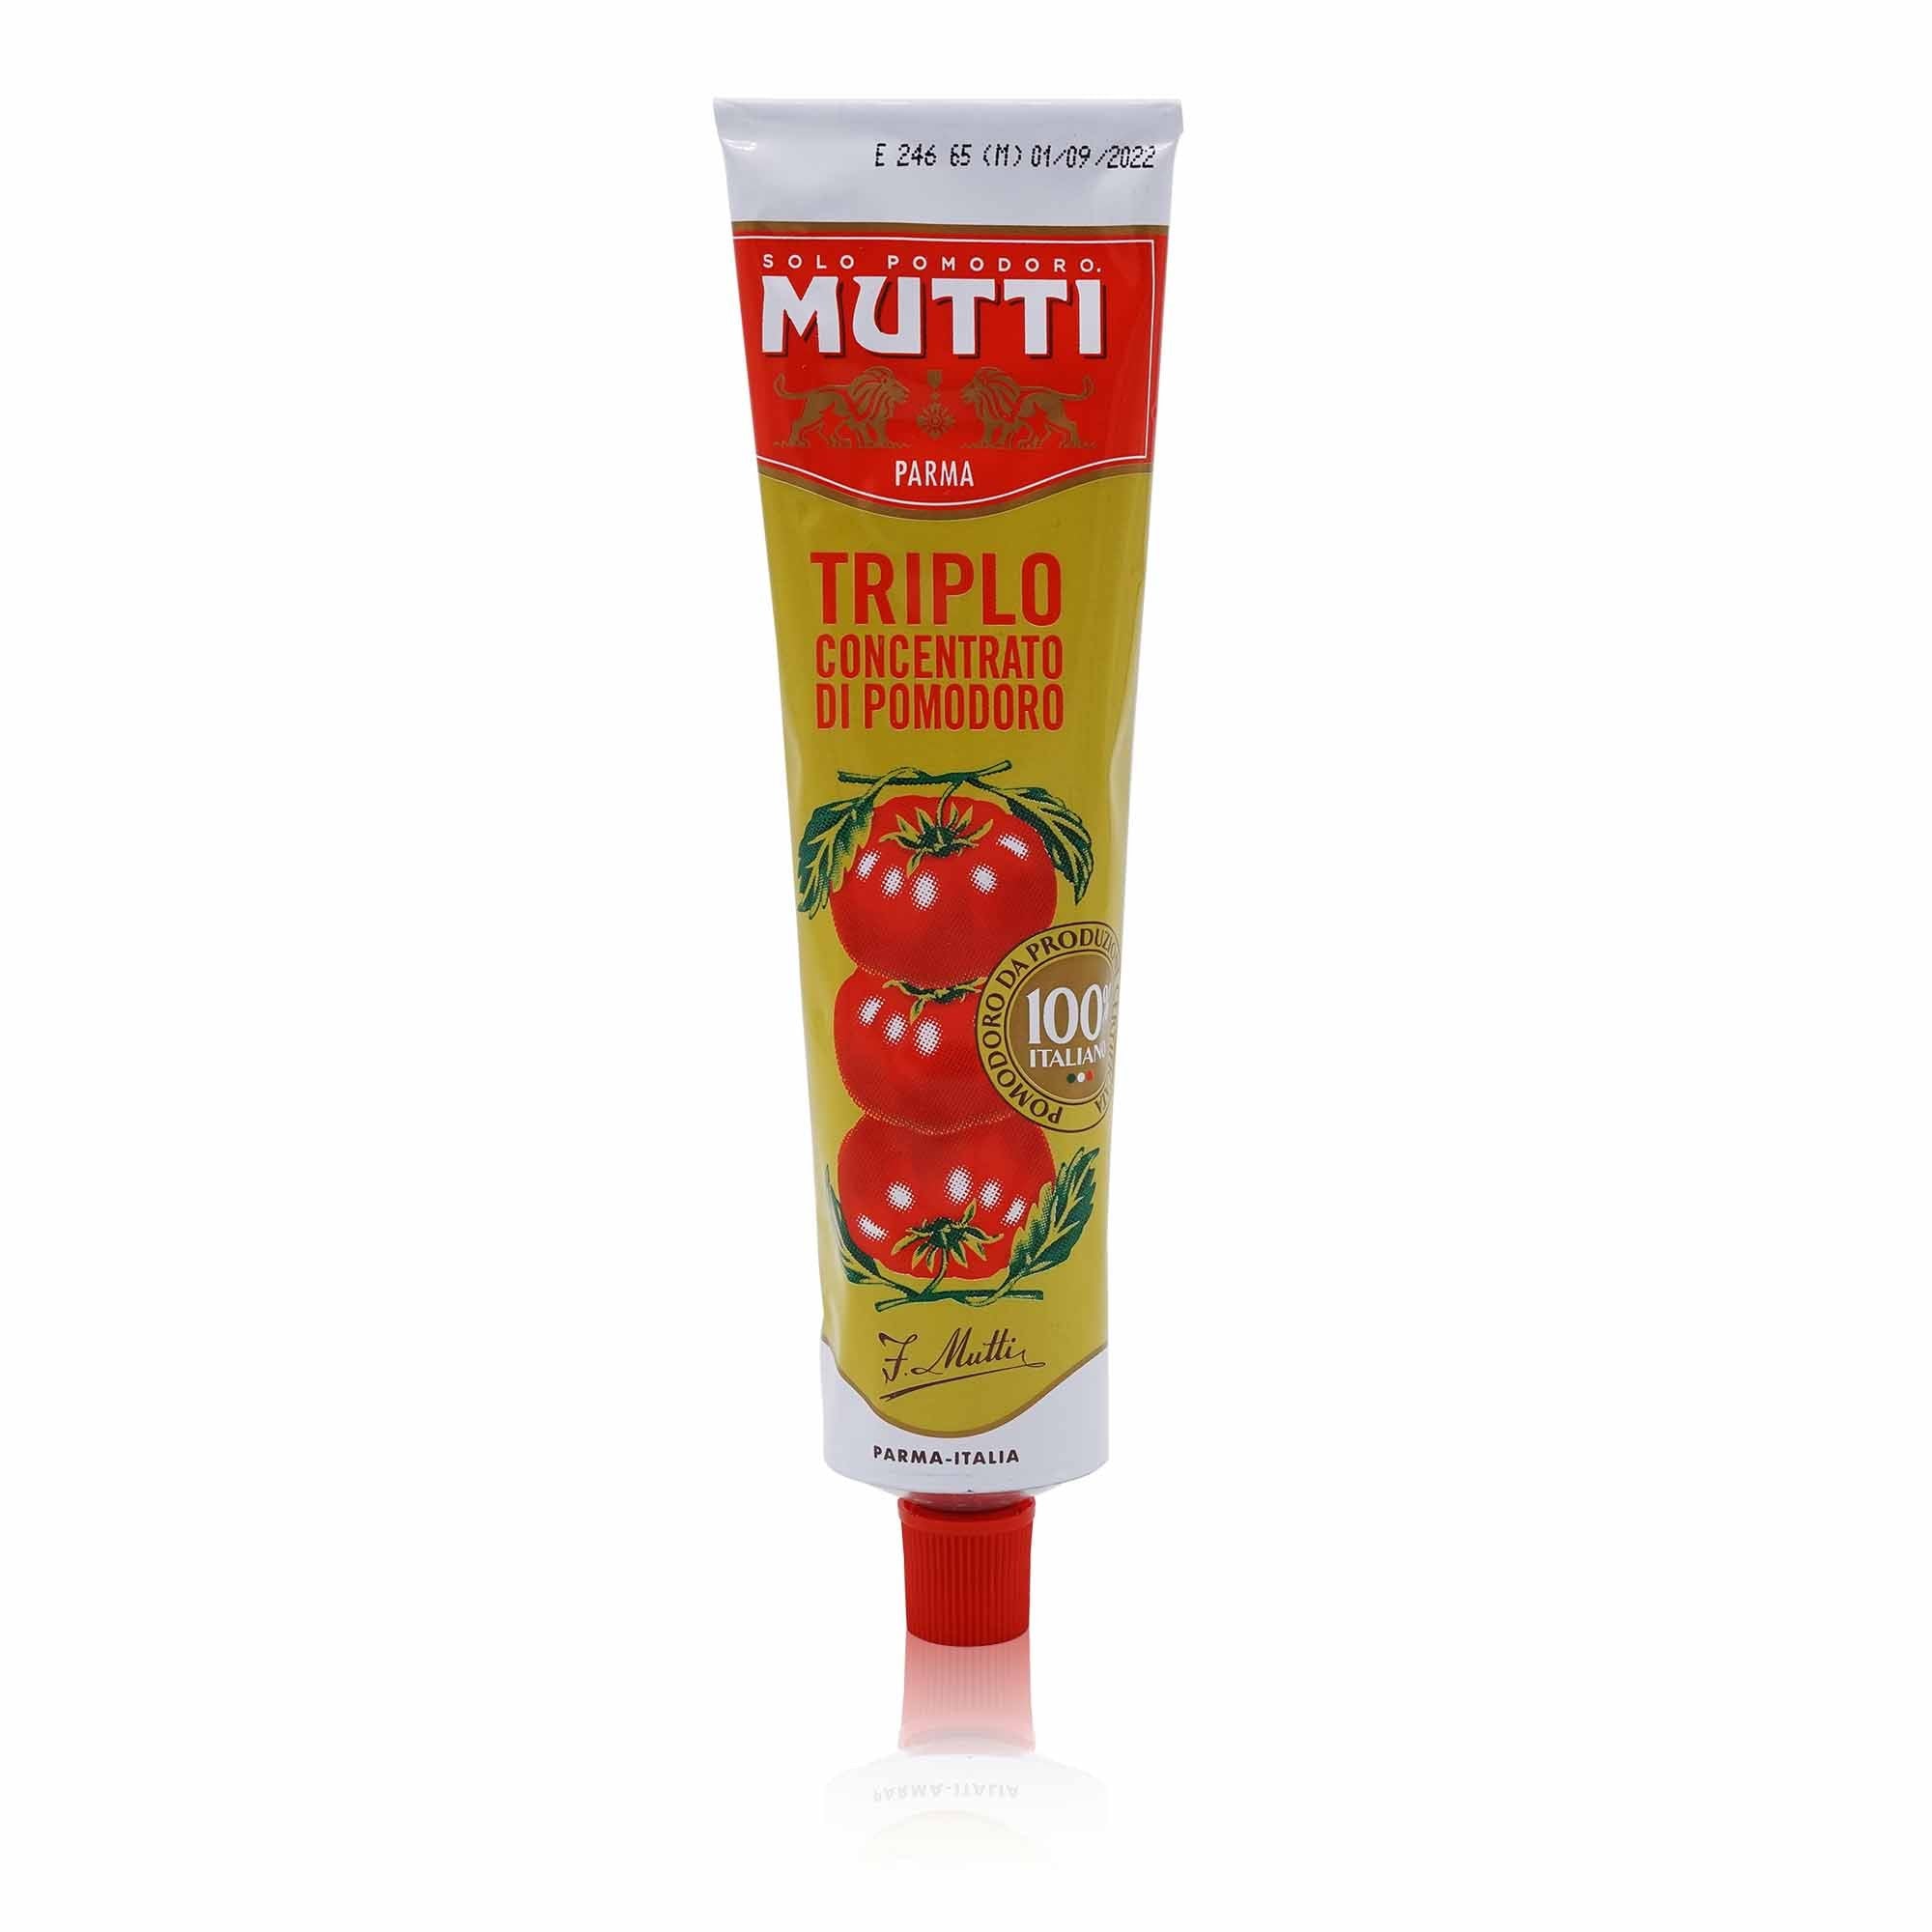 MUTTI Triplo concentrato Dreifach – Tomatenmark dreifach konzentriert - 0,200kg